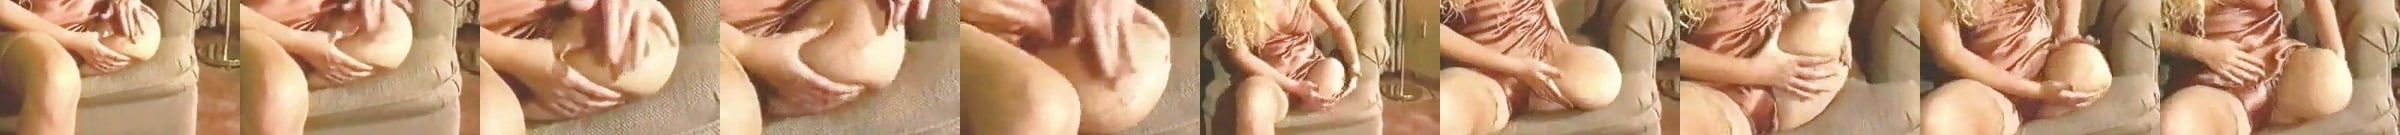 Sak Crutch Blonde Foot Fetish Porn Video 86 XHamster XHamster